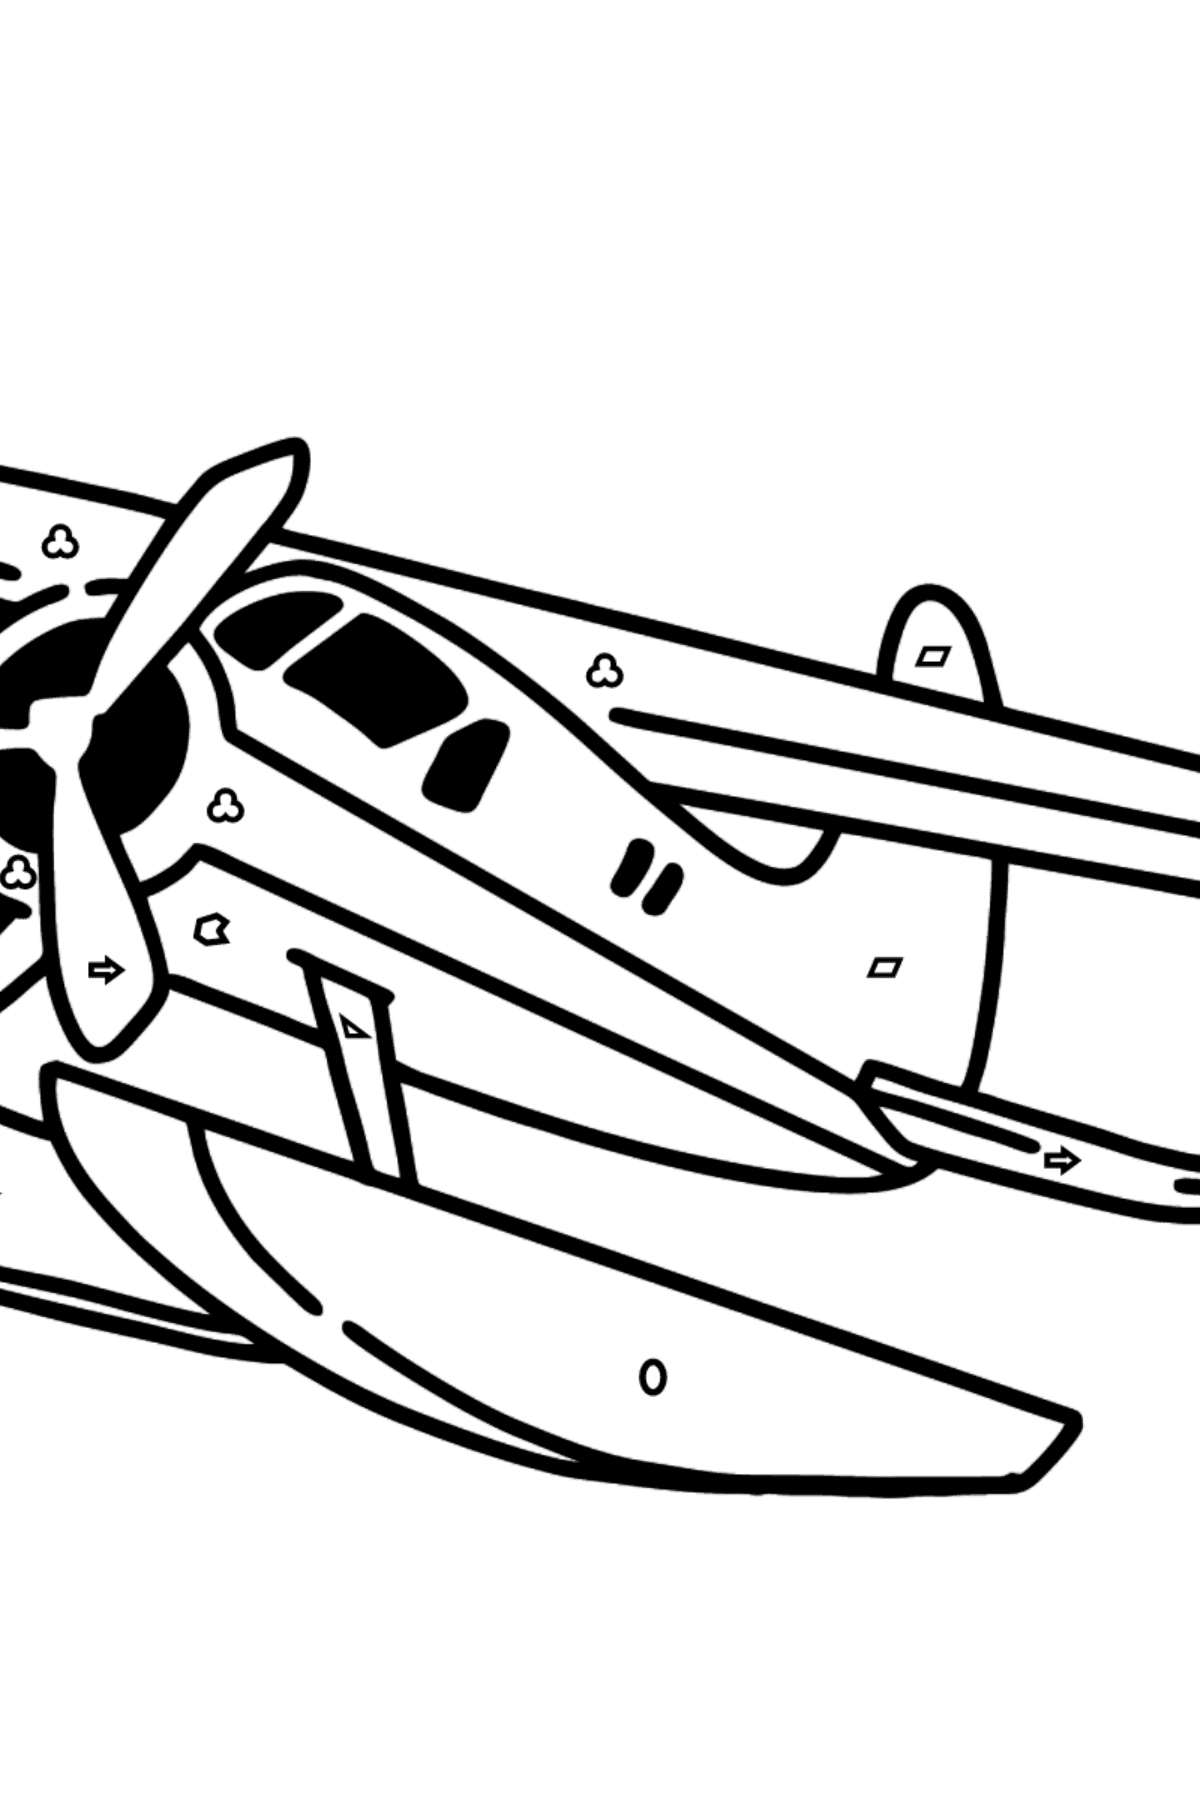 Dibujo de Avión Jet BE-200 para colorear - Colorear por Formas Geométricas para Niños